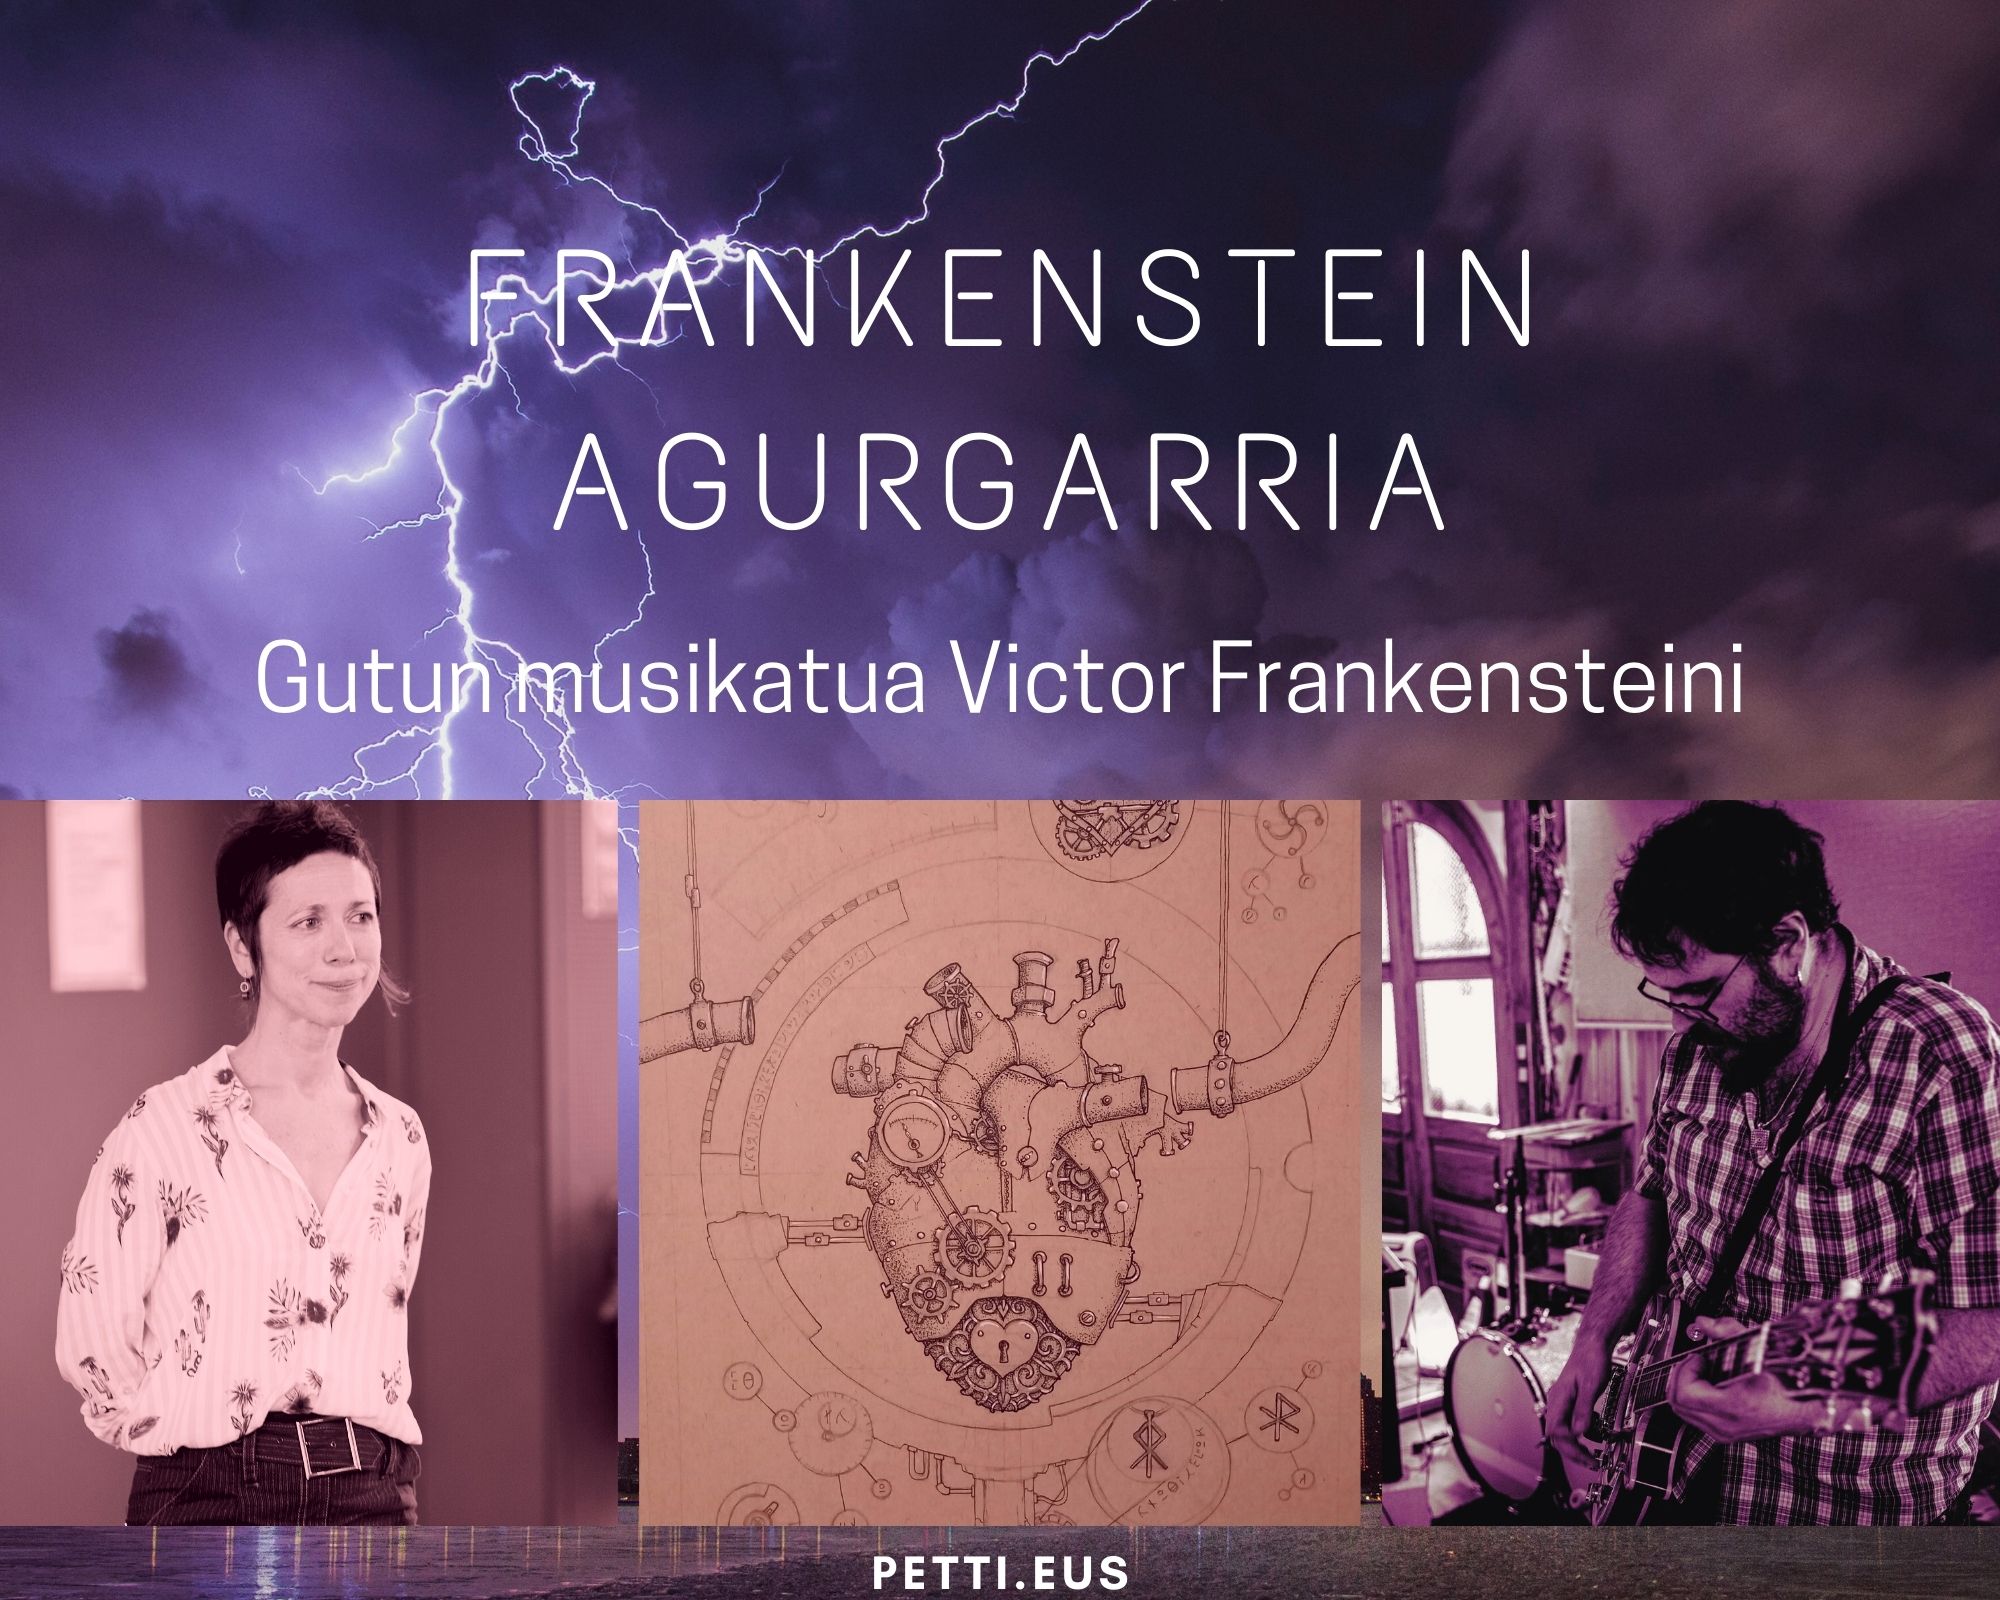 Frankenstein agurgarria